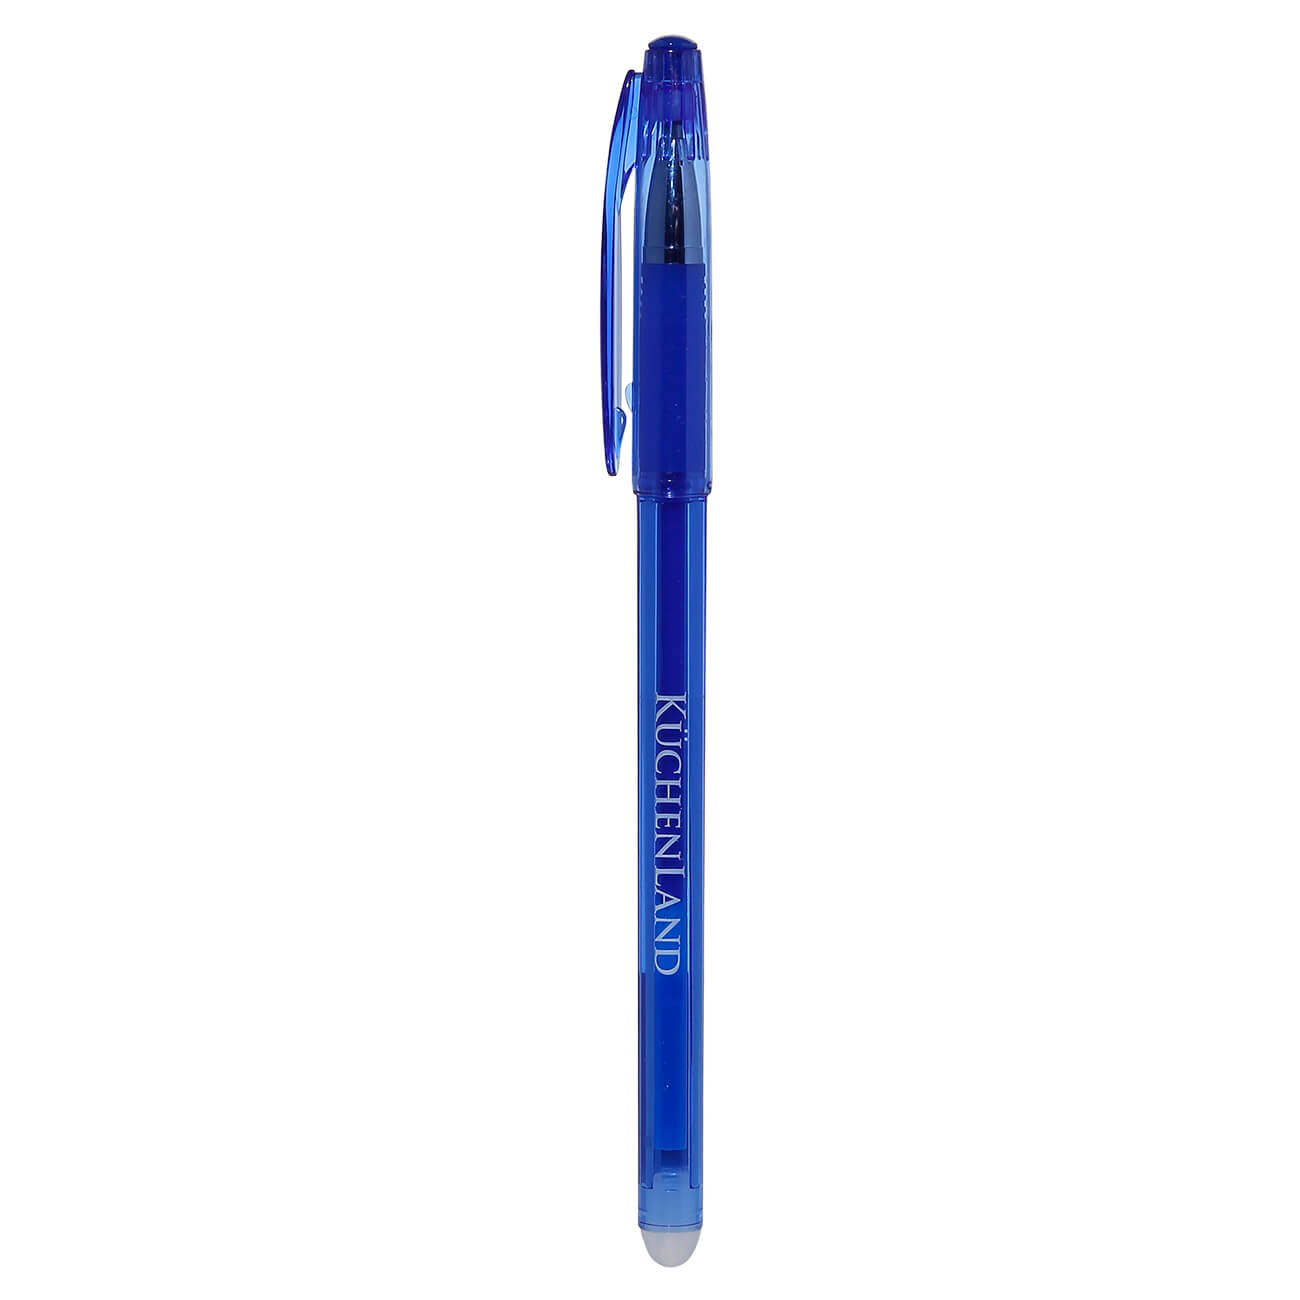 Ручка гелевая, 15 см, стираемые чернила, синяя, Draw перьевая ручка manzoni